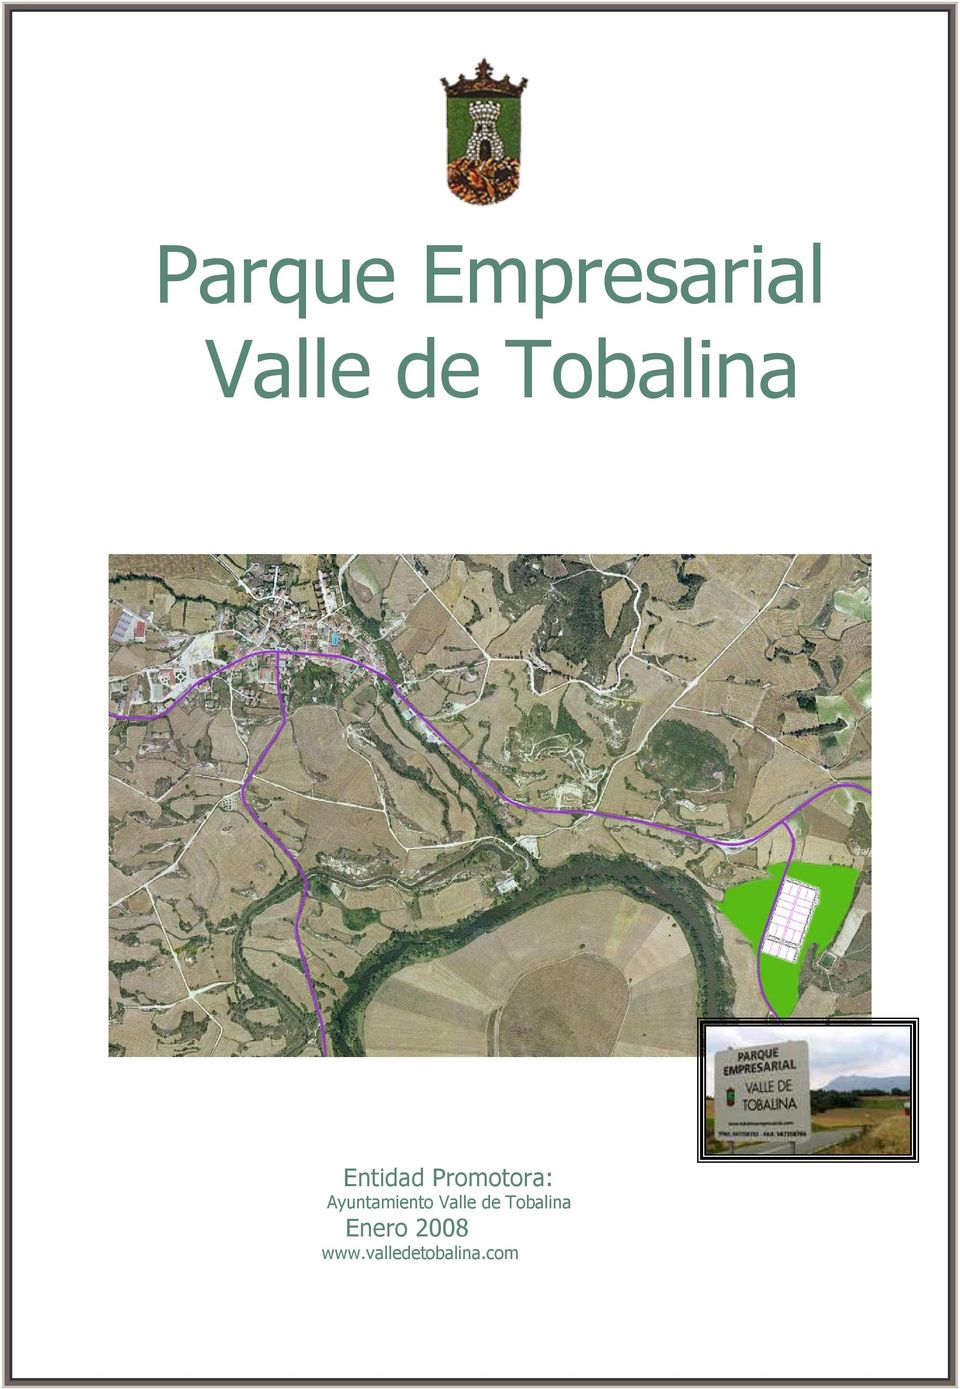 Ayuntamiento Valle de Tobalina